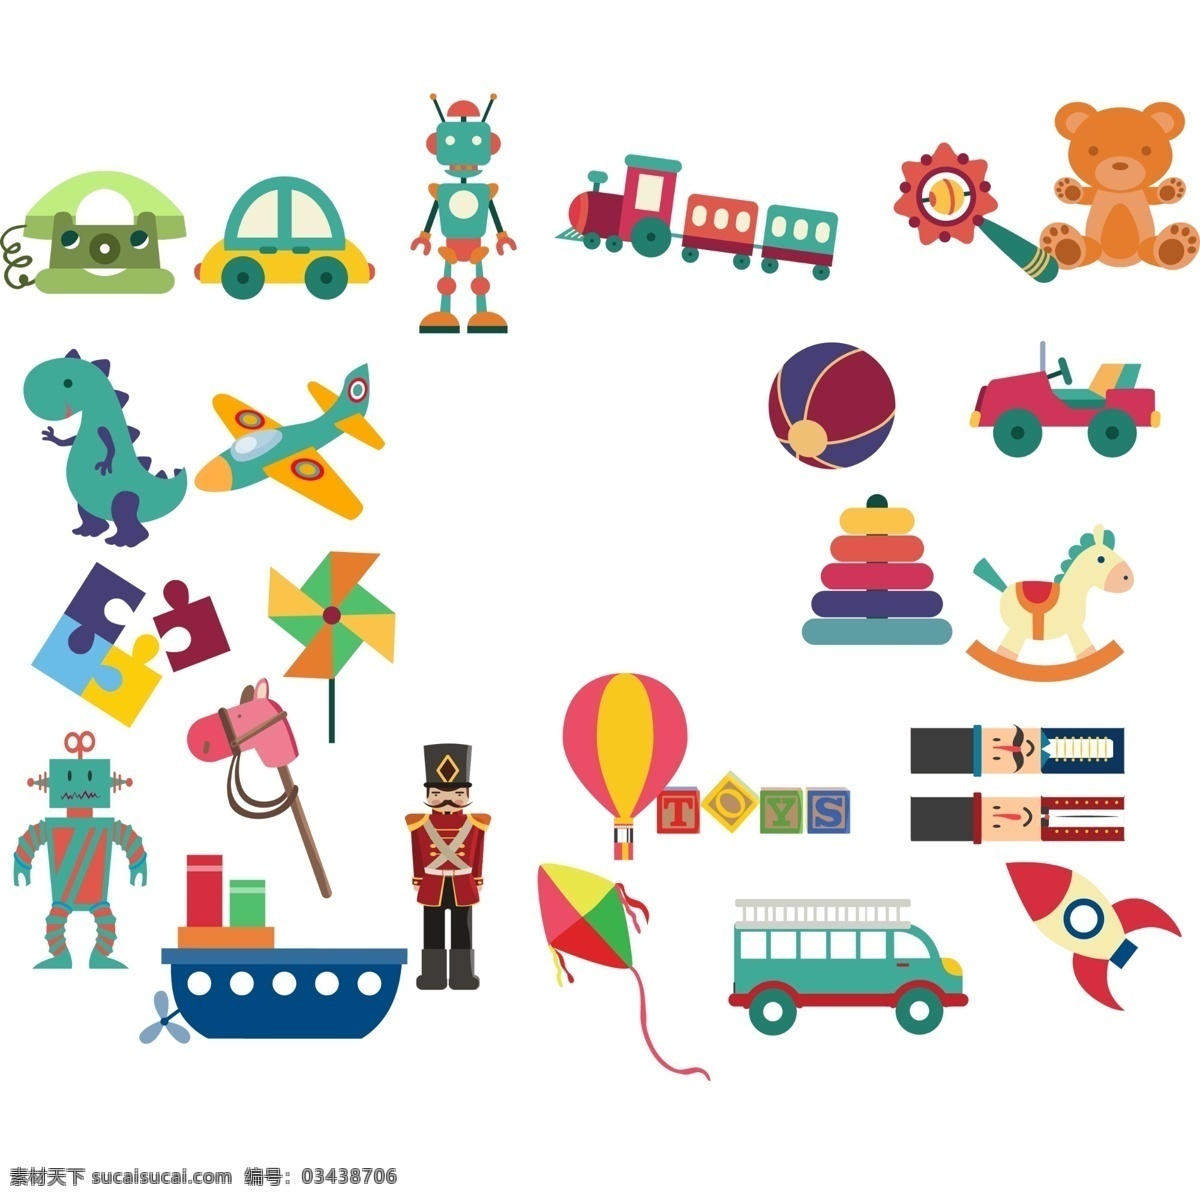 玩具素材 儿童素材 卡通素材 幼儿园素材 素材元素 手绘素材 校园素材 小孩素材 元素